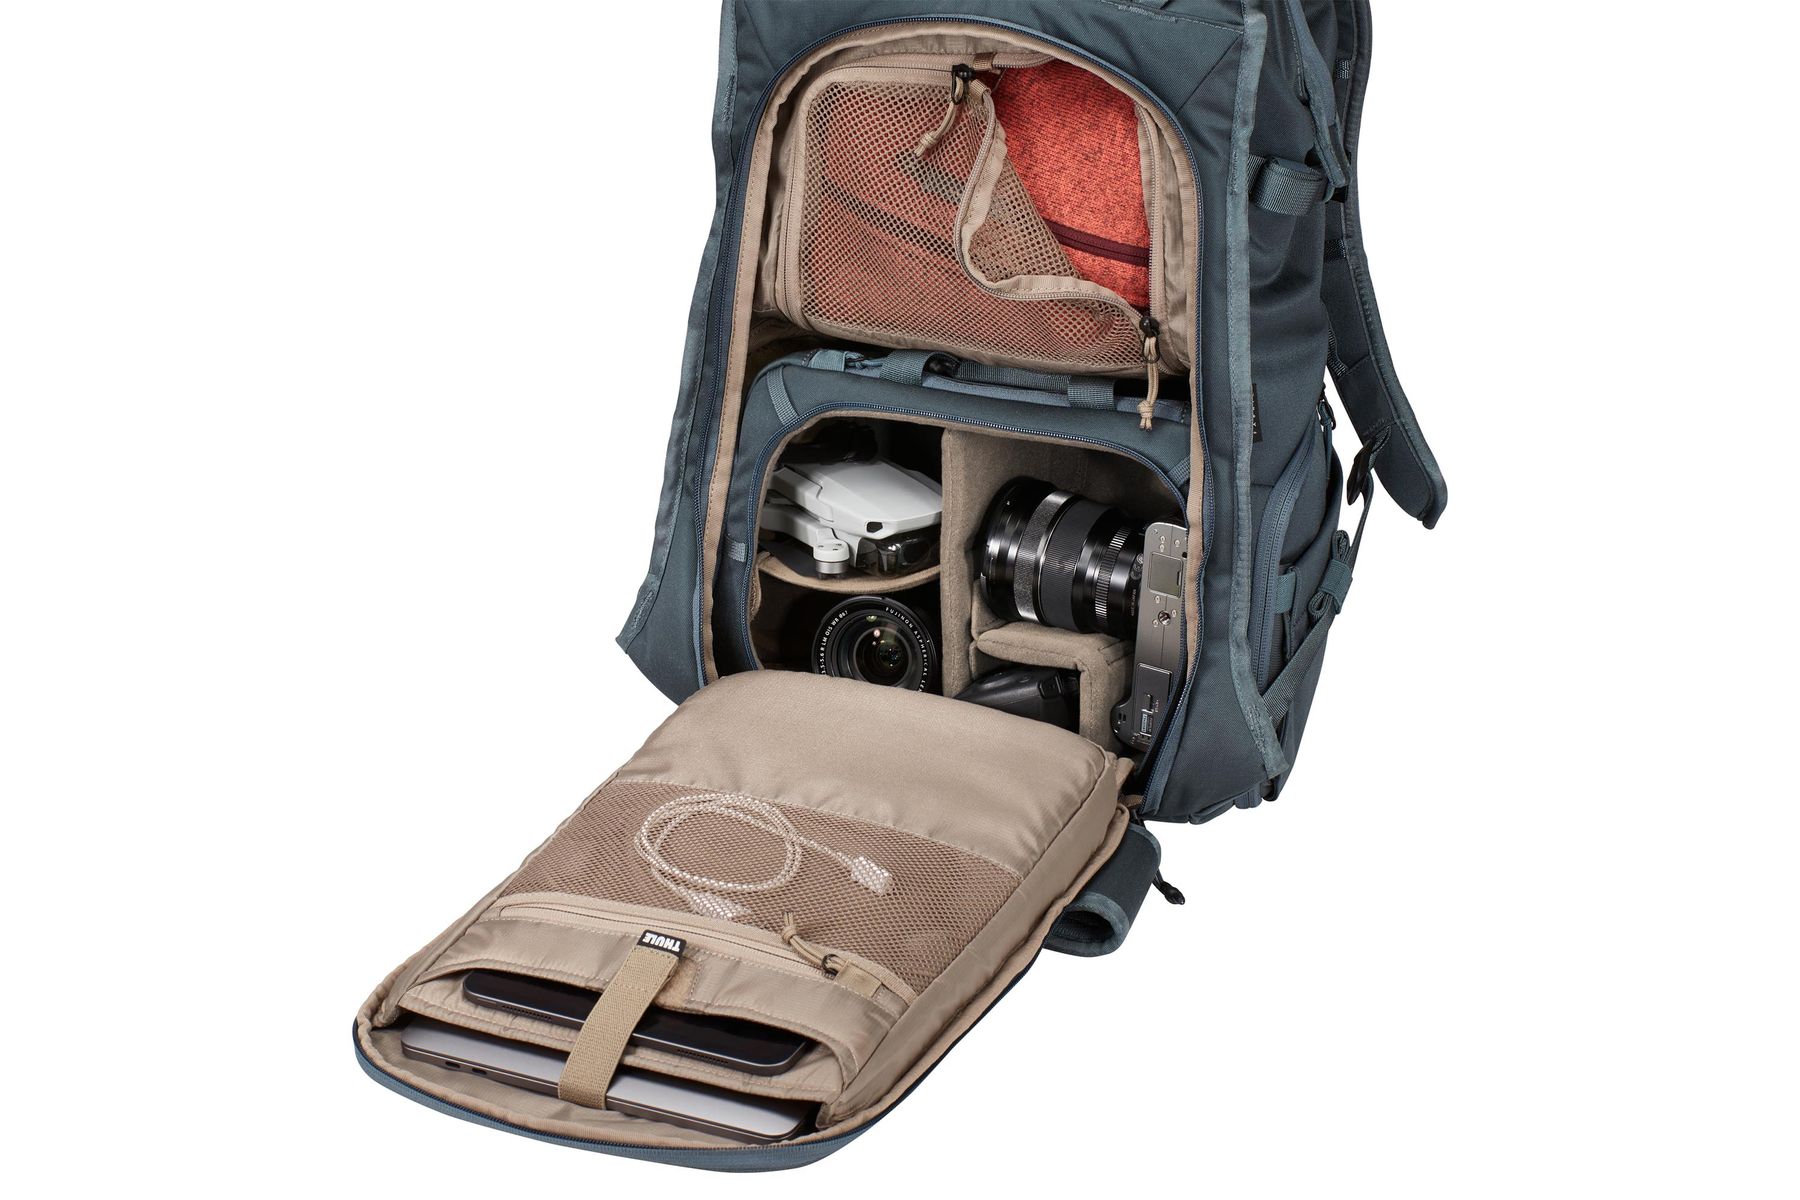 Thule Covert DSLR Backpack 24L